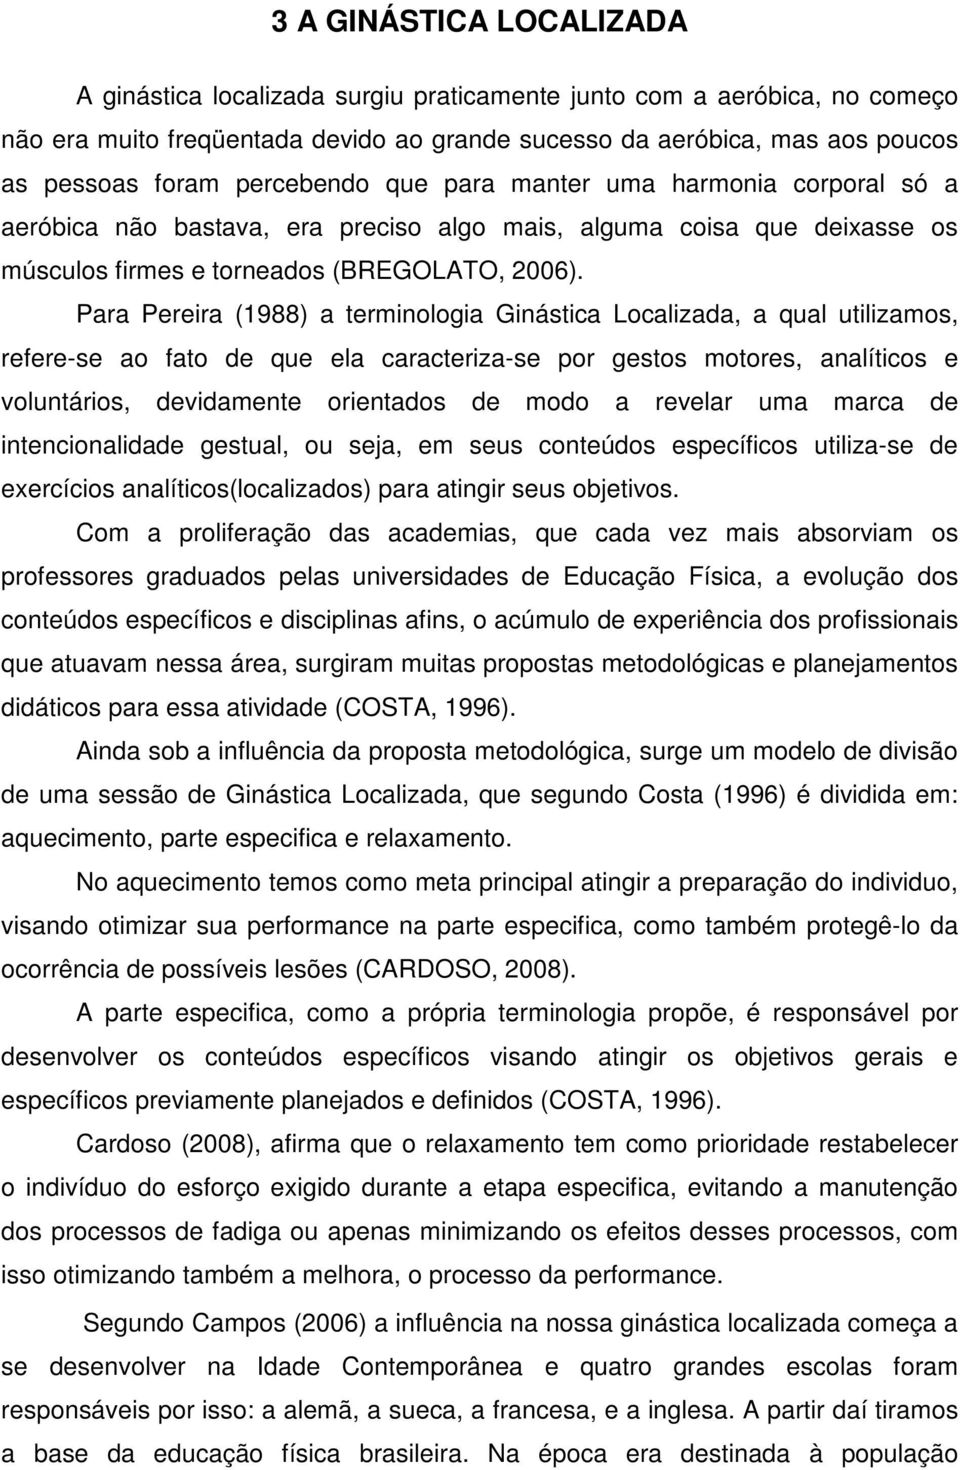 Para Pereira (1988) a terminologia Ginástica Localizada, a qual utilizamos, refere-se ao fato de que ela caracteriza-se por gestos motores, analíticos e voluntários, devidamente orientados de modo a